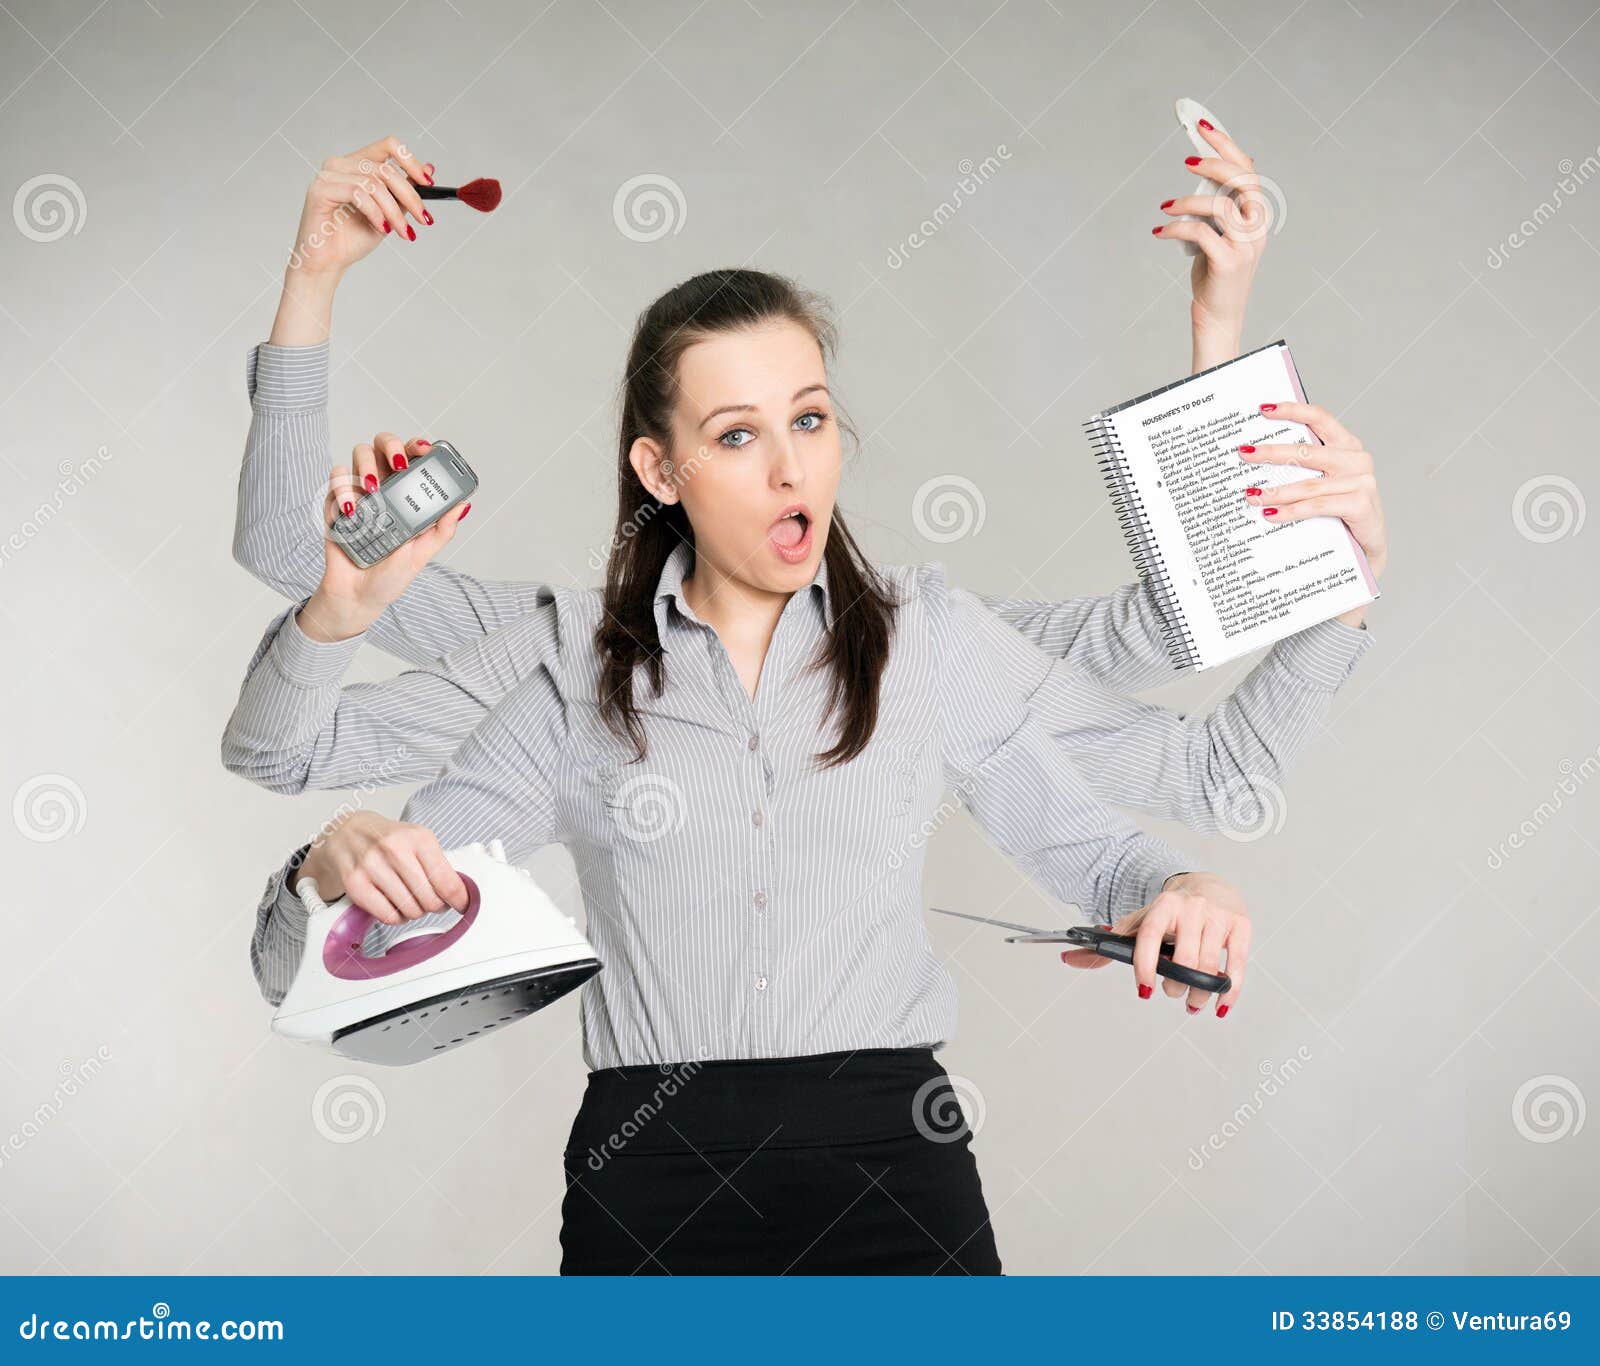 woman multitasking her work